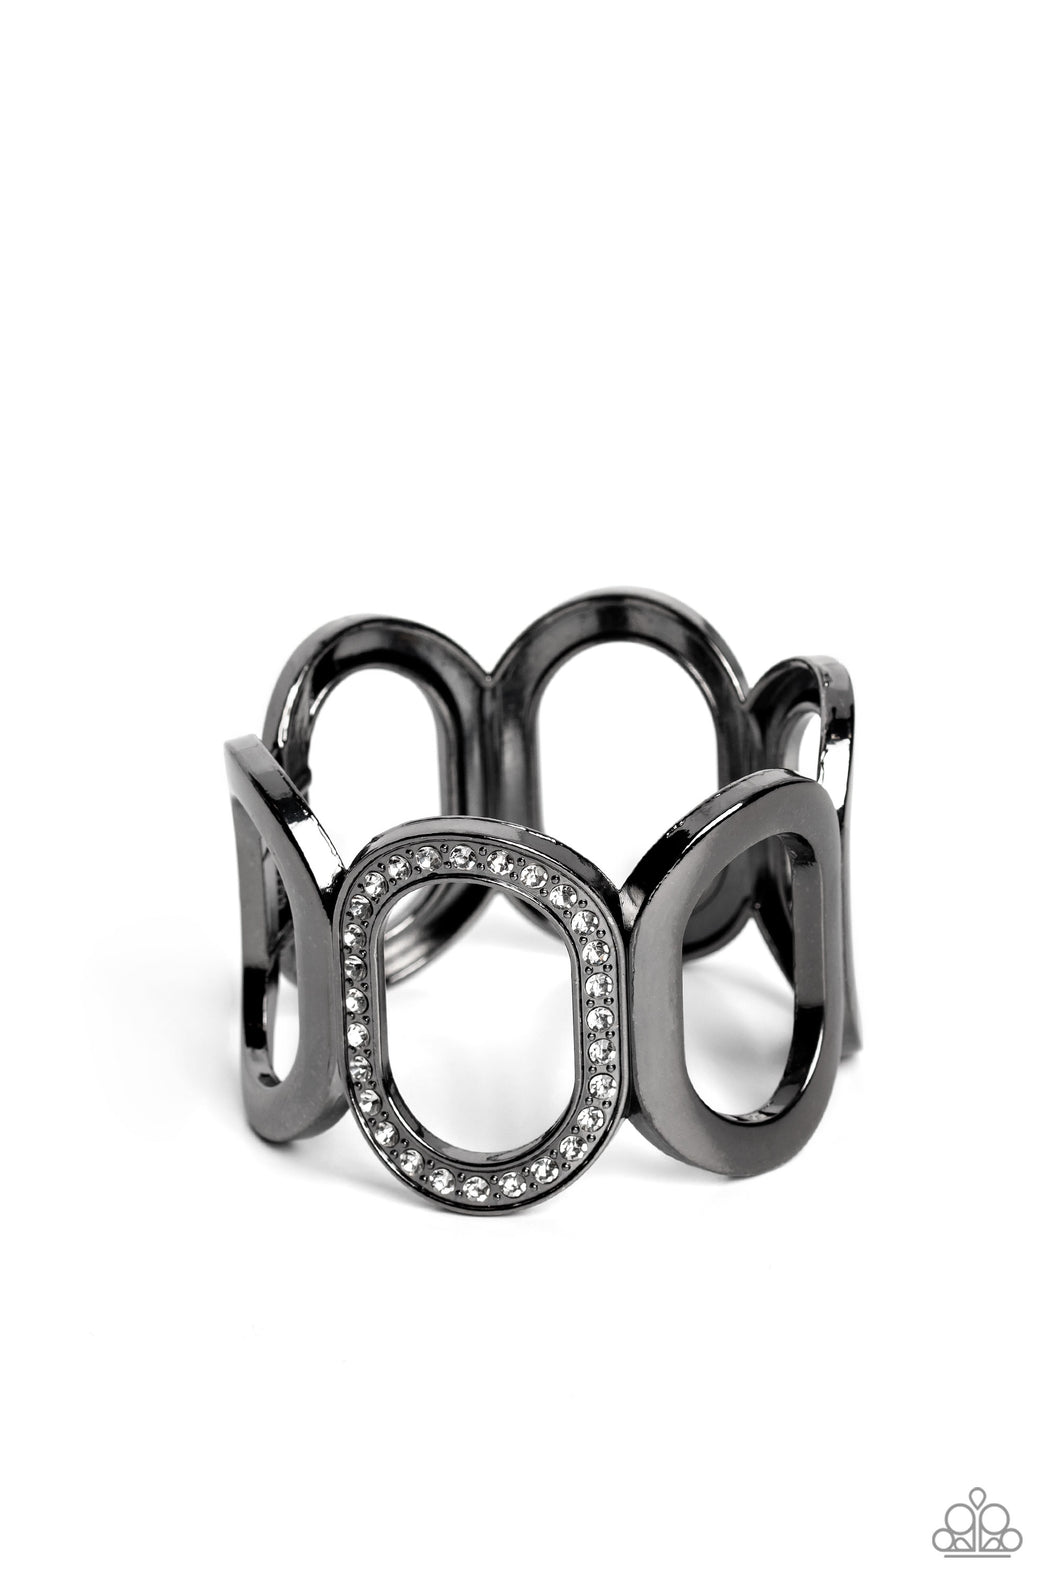 Opulent Ovals - Black Bracelet